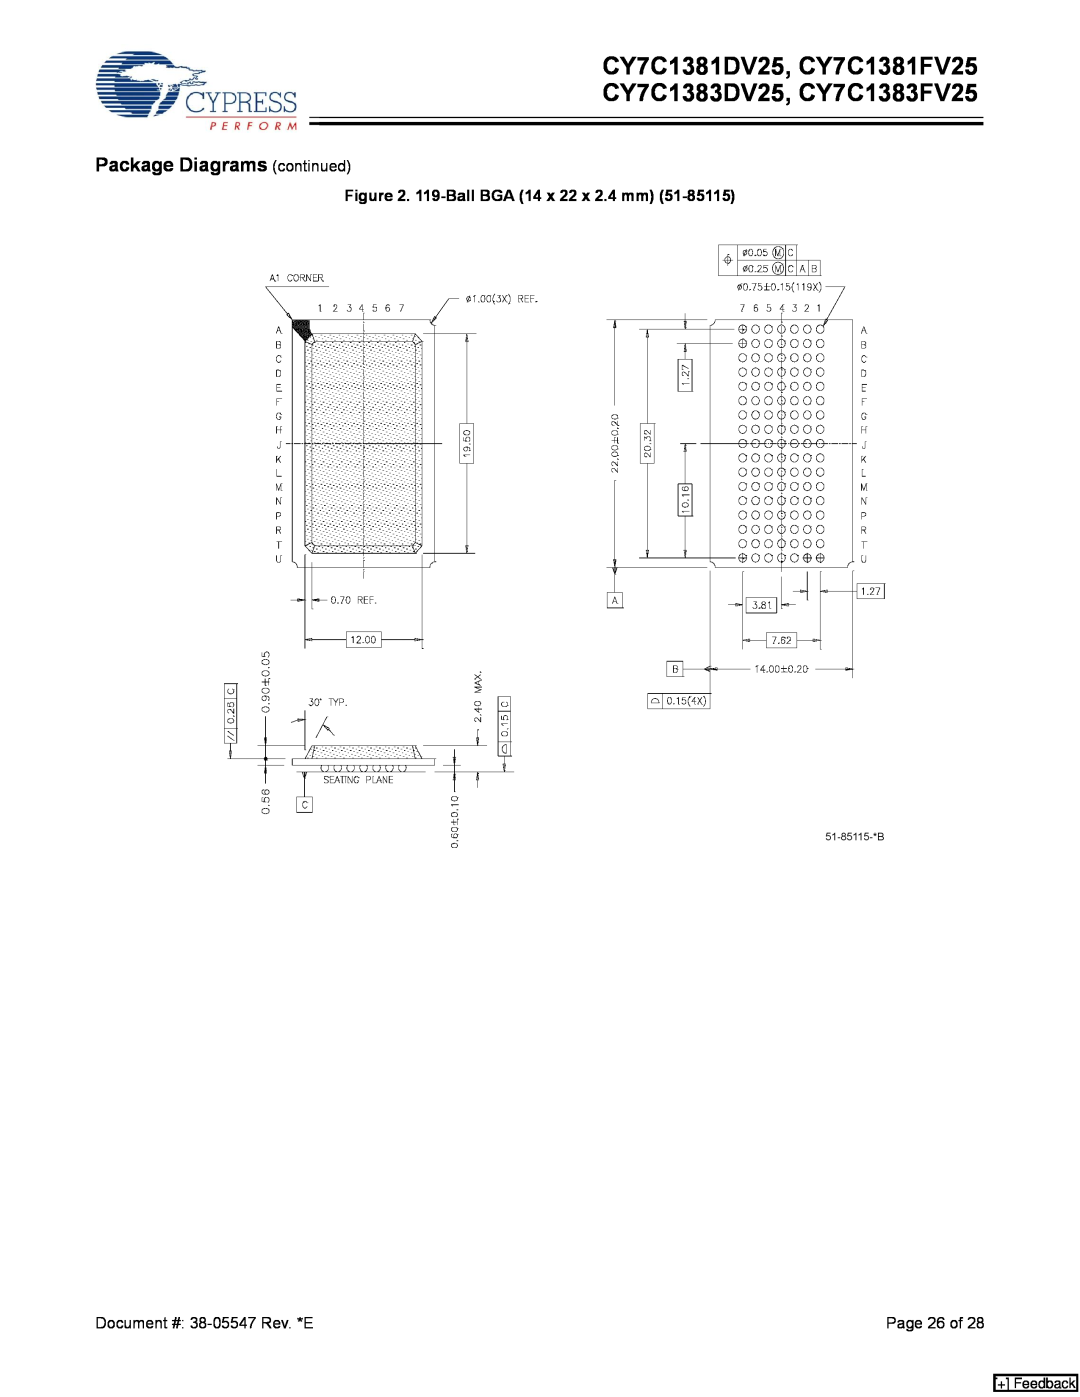 Cypress manual Package Diagrams continued, CY7C1381DV25, CY7C1381FV25 CY7C1383DV25, CY7C1383FV25, + Feedback 